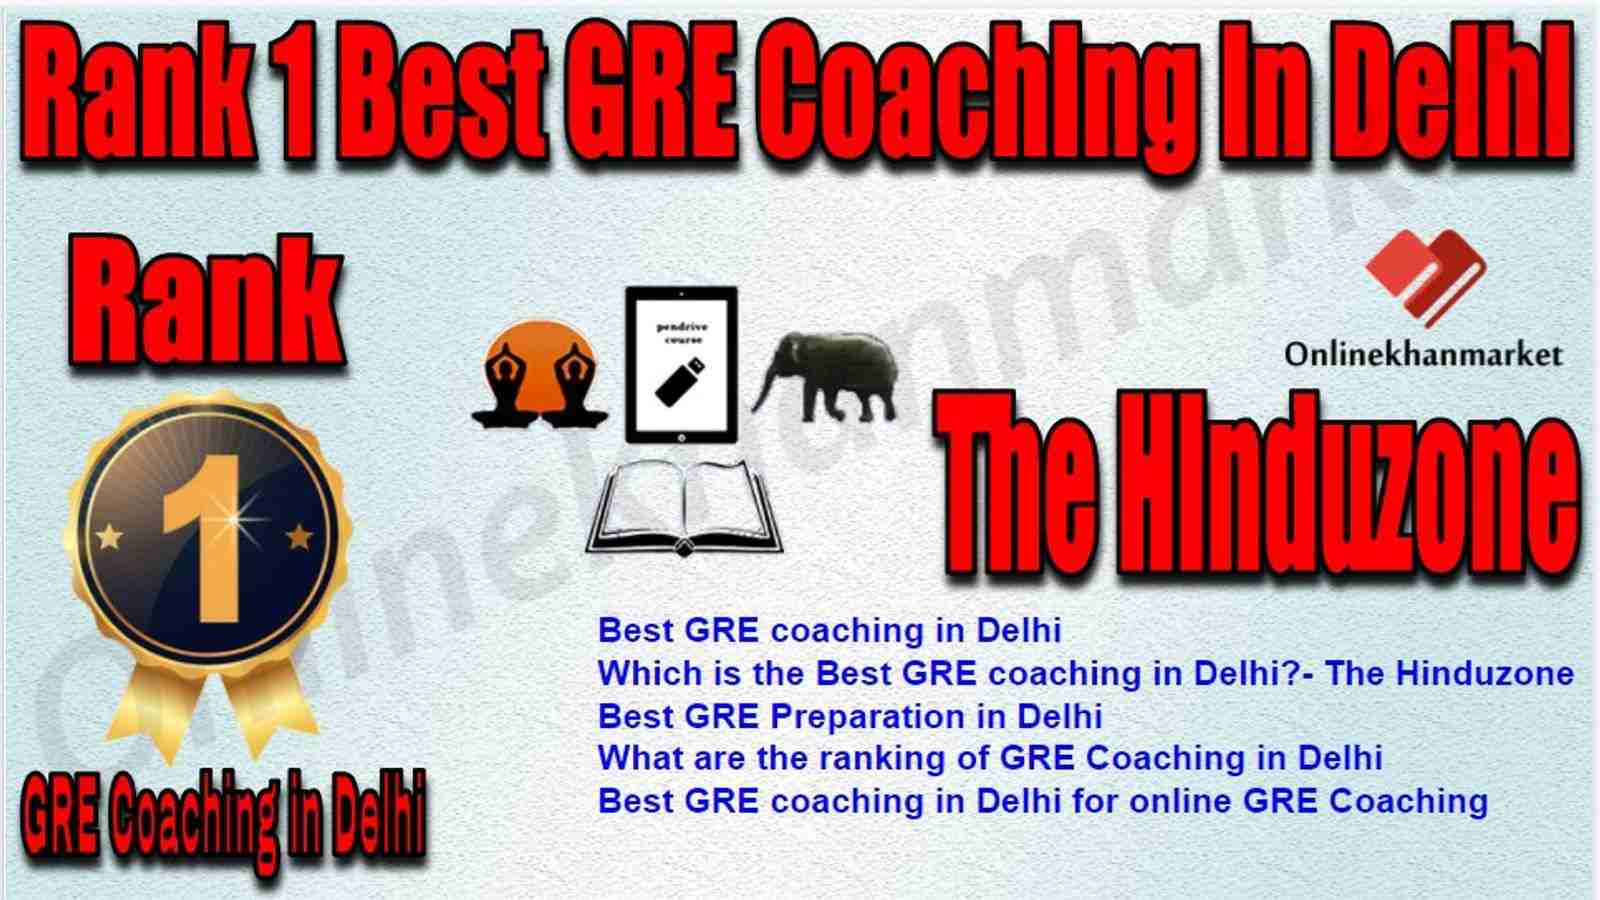 Rank 1 Best GRE Coaching in Delhi